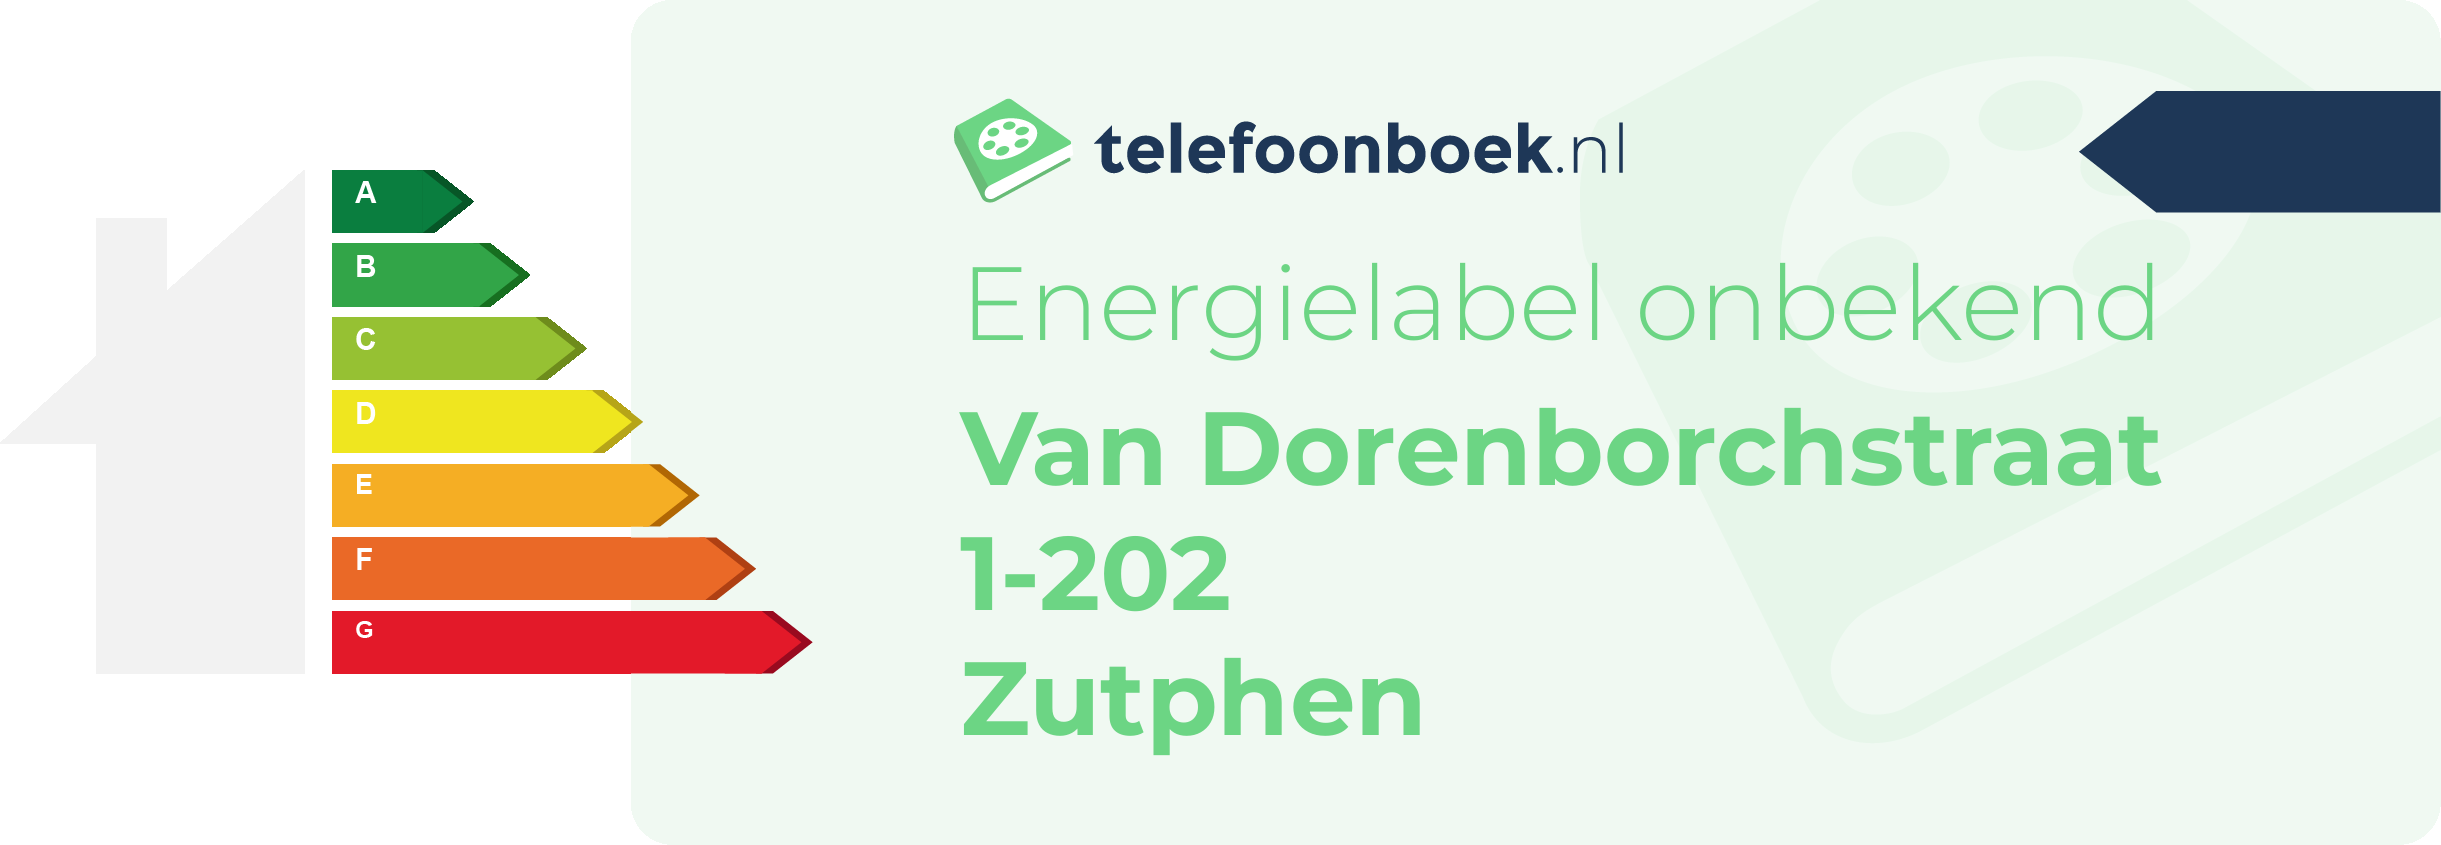 Energielabel Van Dorenborchstraat 1-202 Zutphen